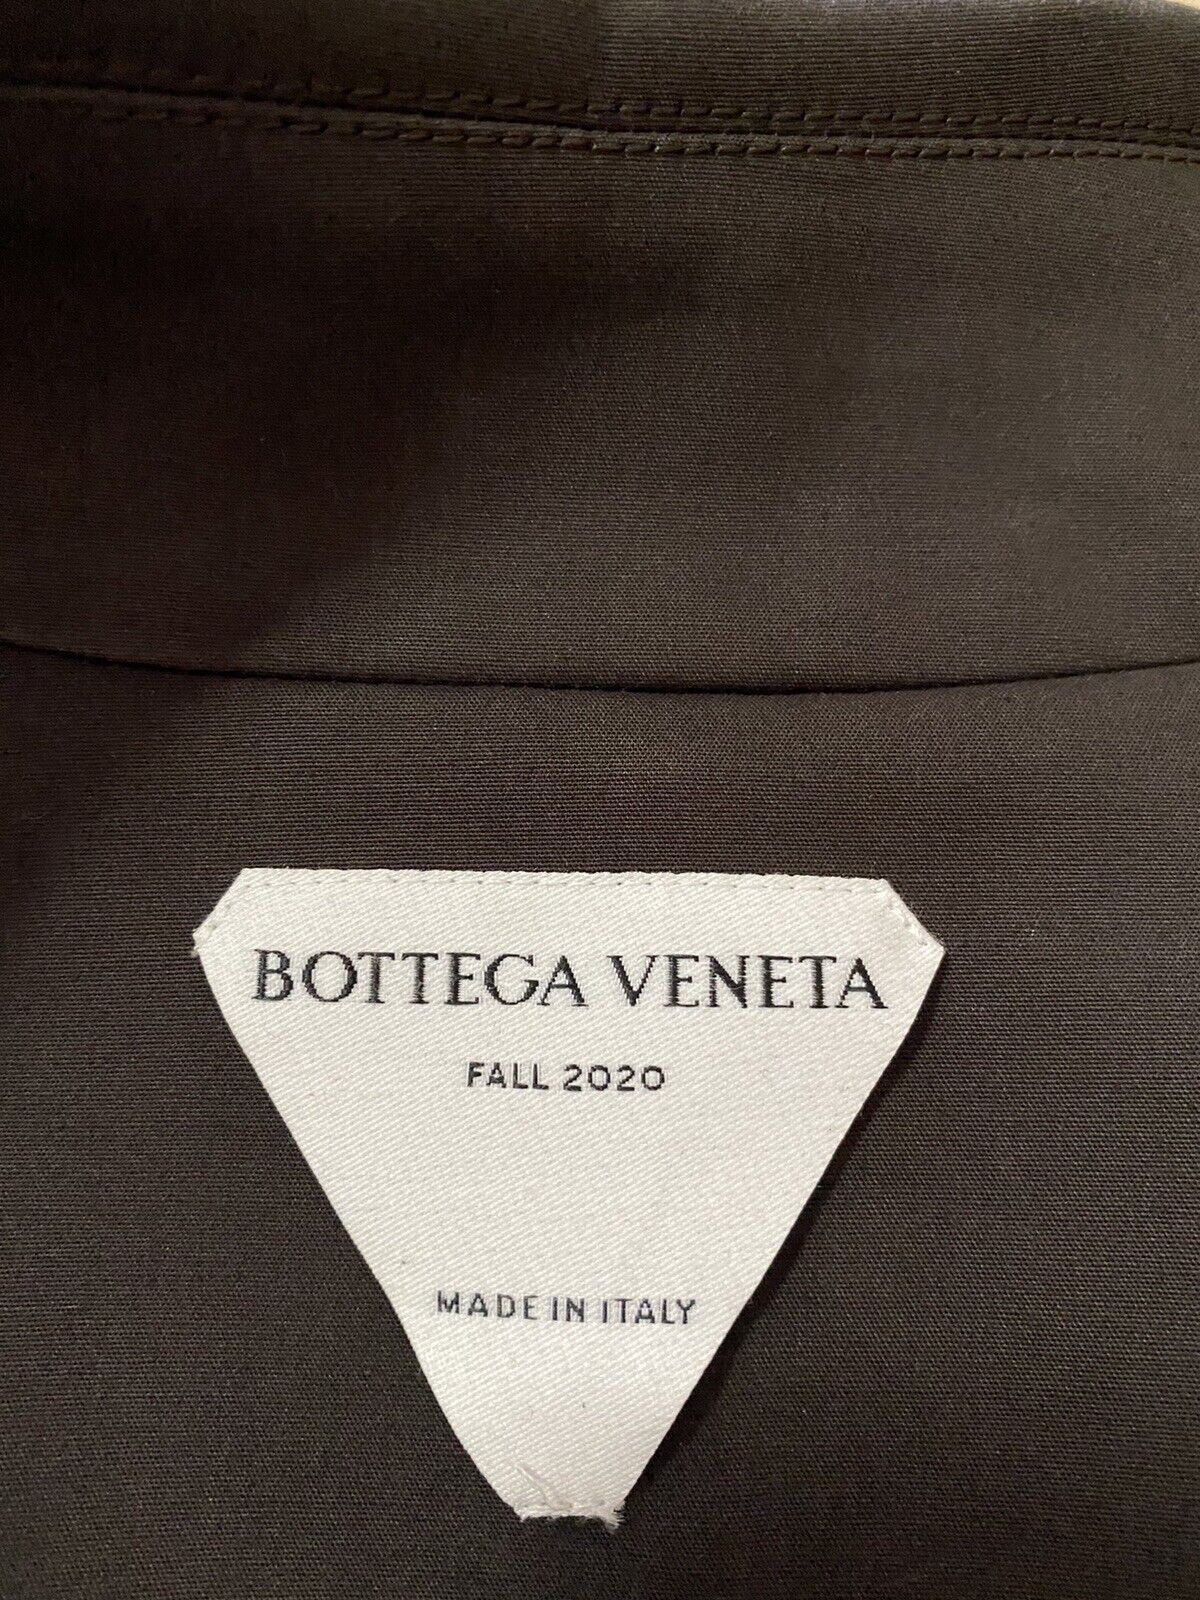 Новый мужской водонепроницаемый хлопковый плащ Bottega Veneta, 2650 долларов США, коричневый 42 США/52 ЕС